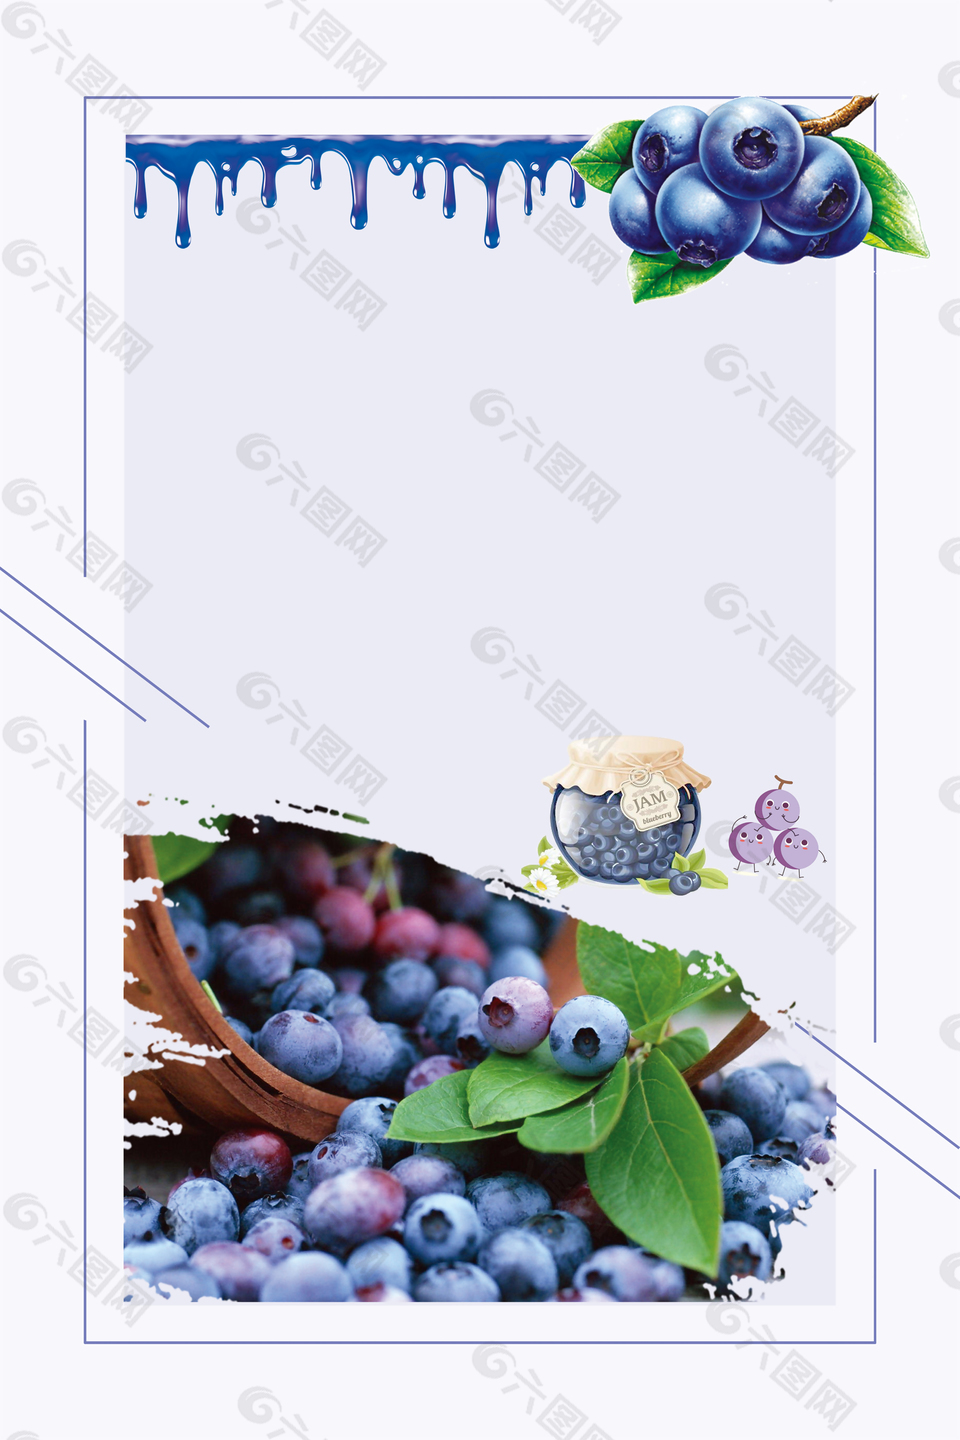 简约新鲜水果蓝莓果酱海报背景素材